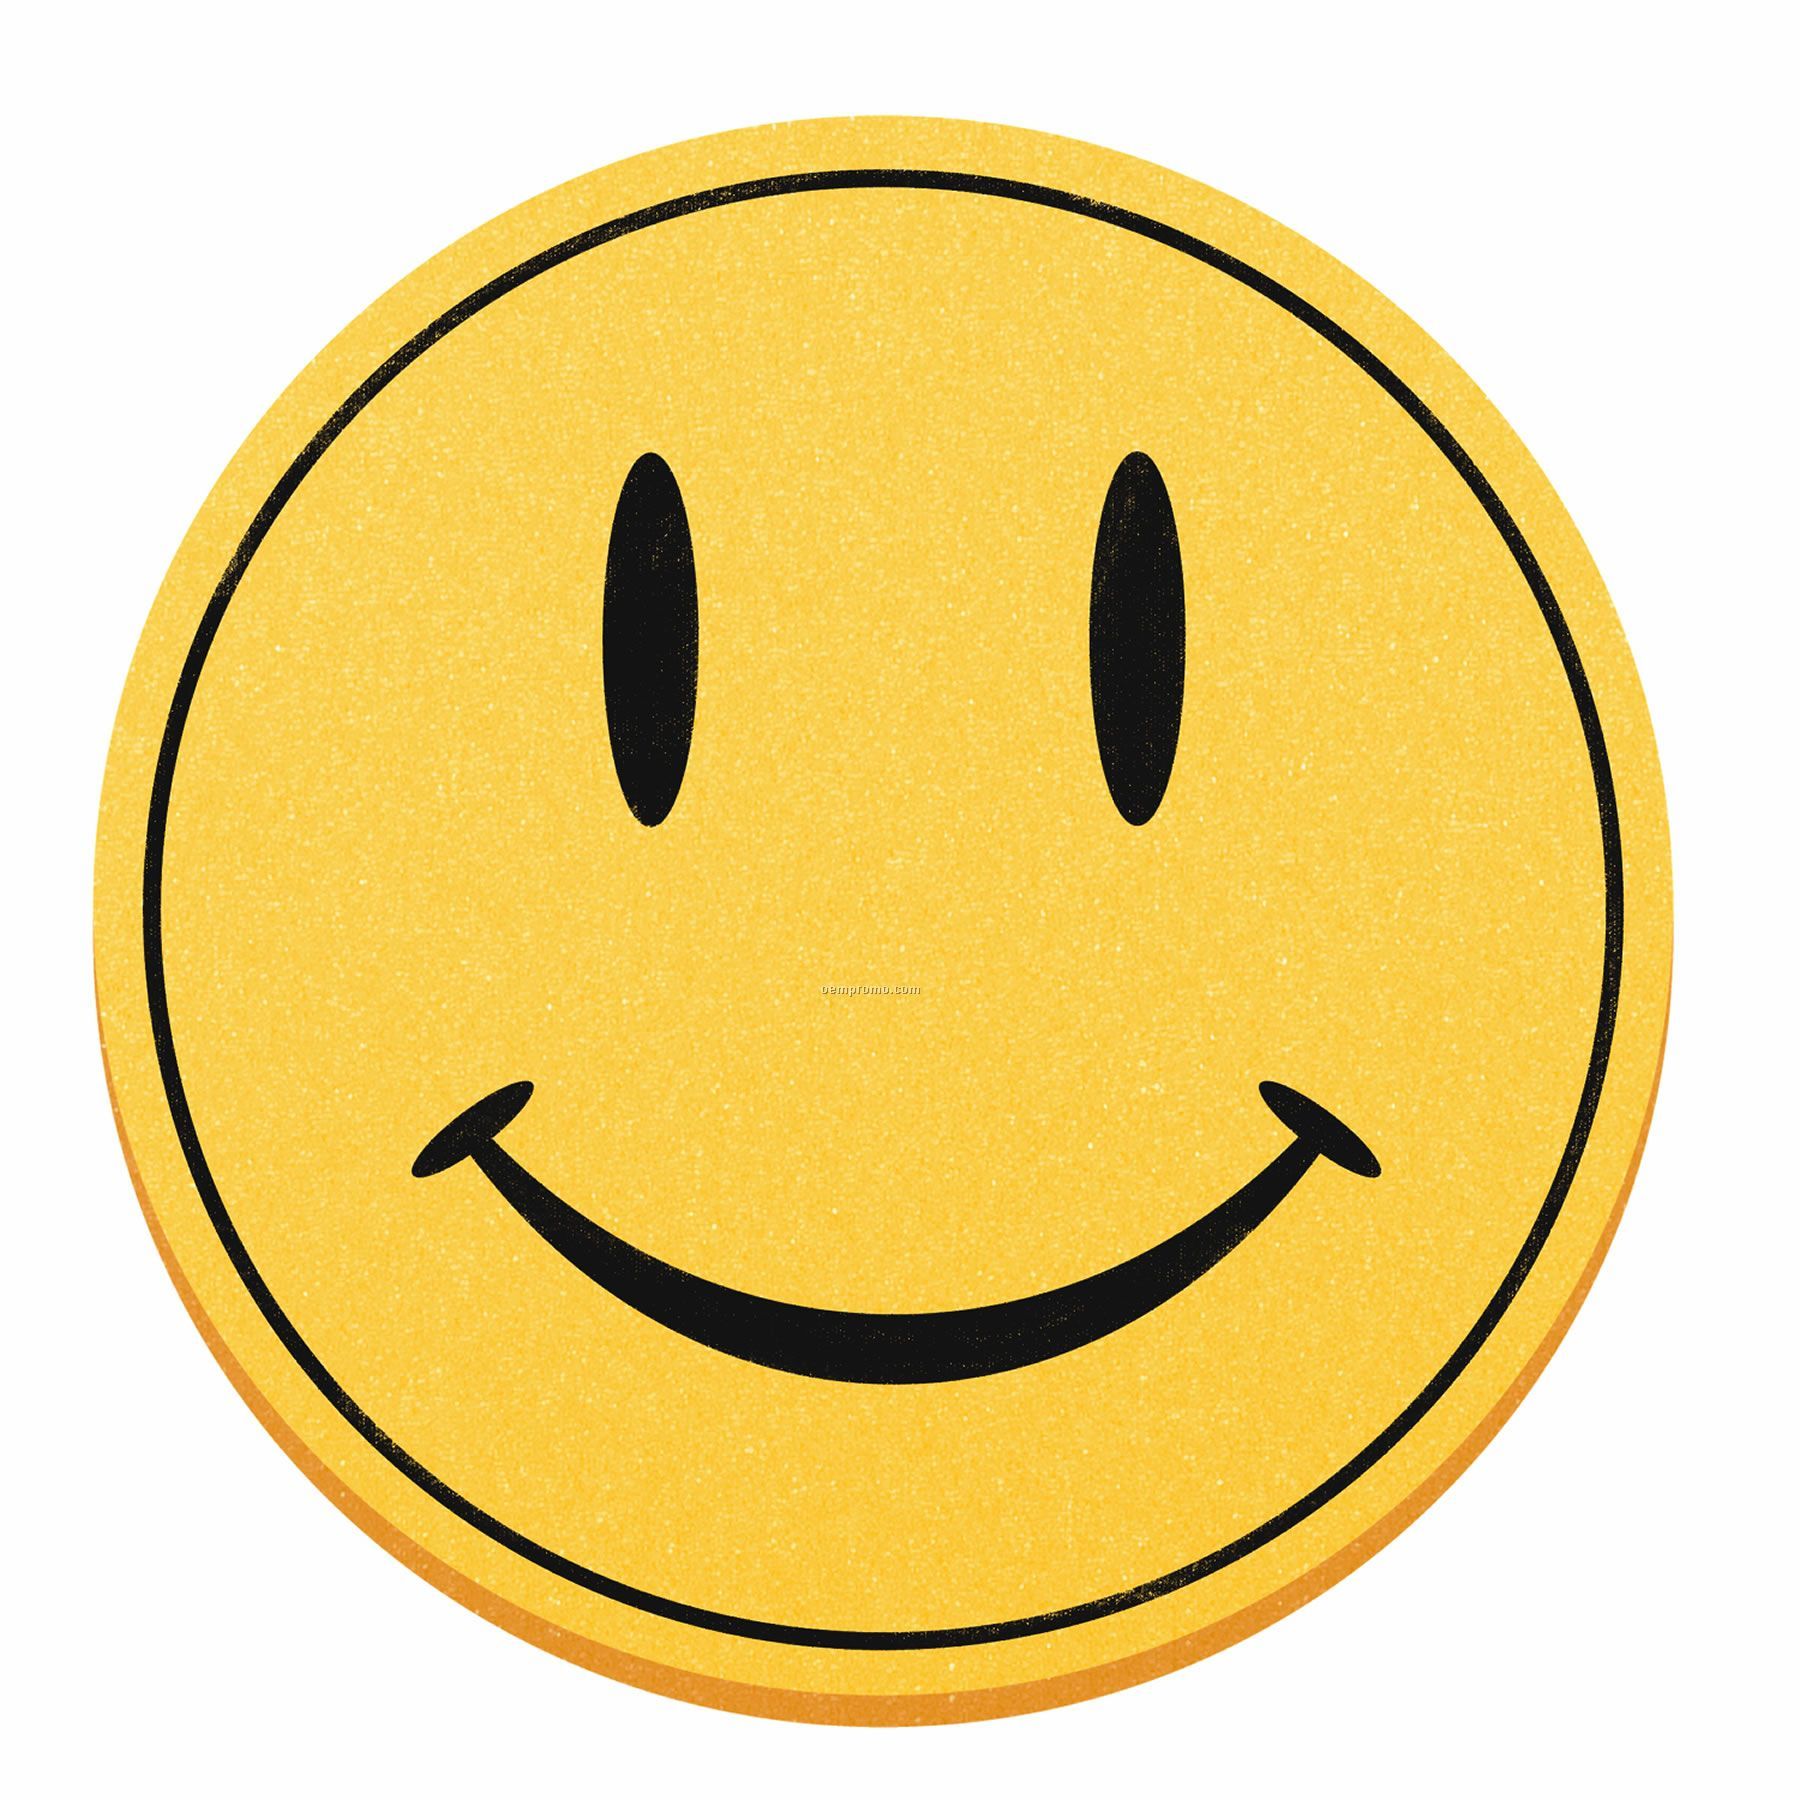 Smiley Face Clip Art At Clker Com Vector Clip Art Onl - vrogue.co